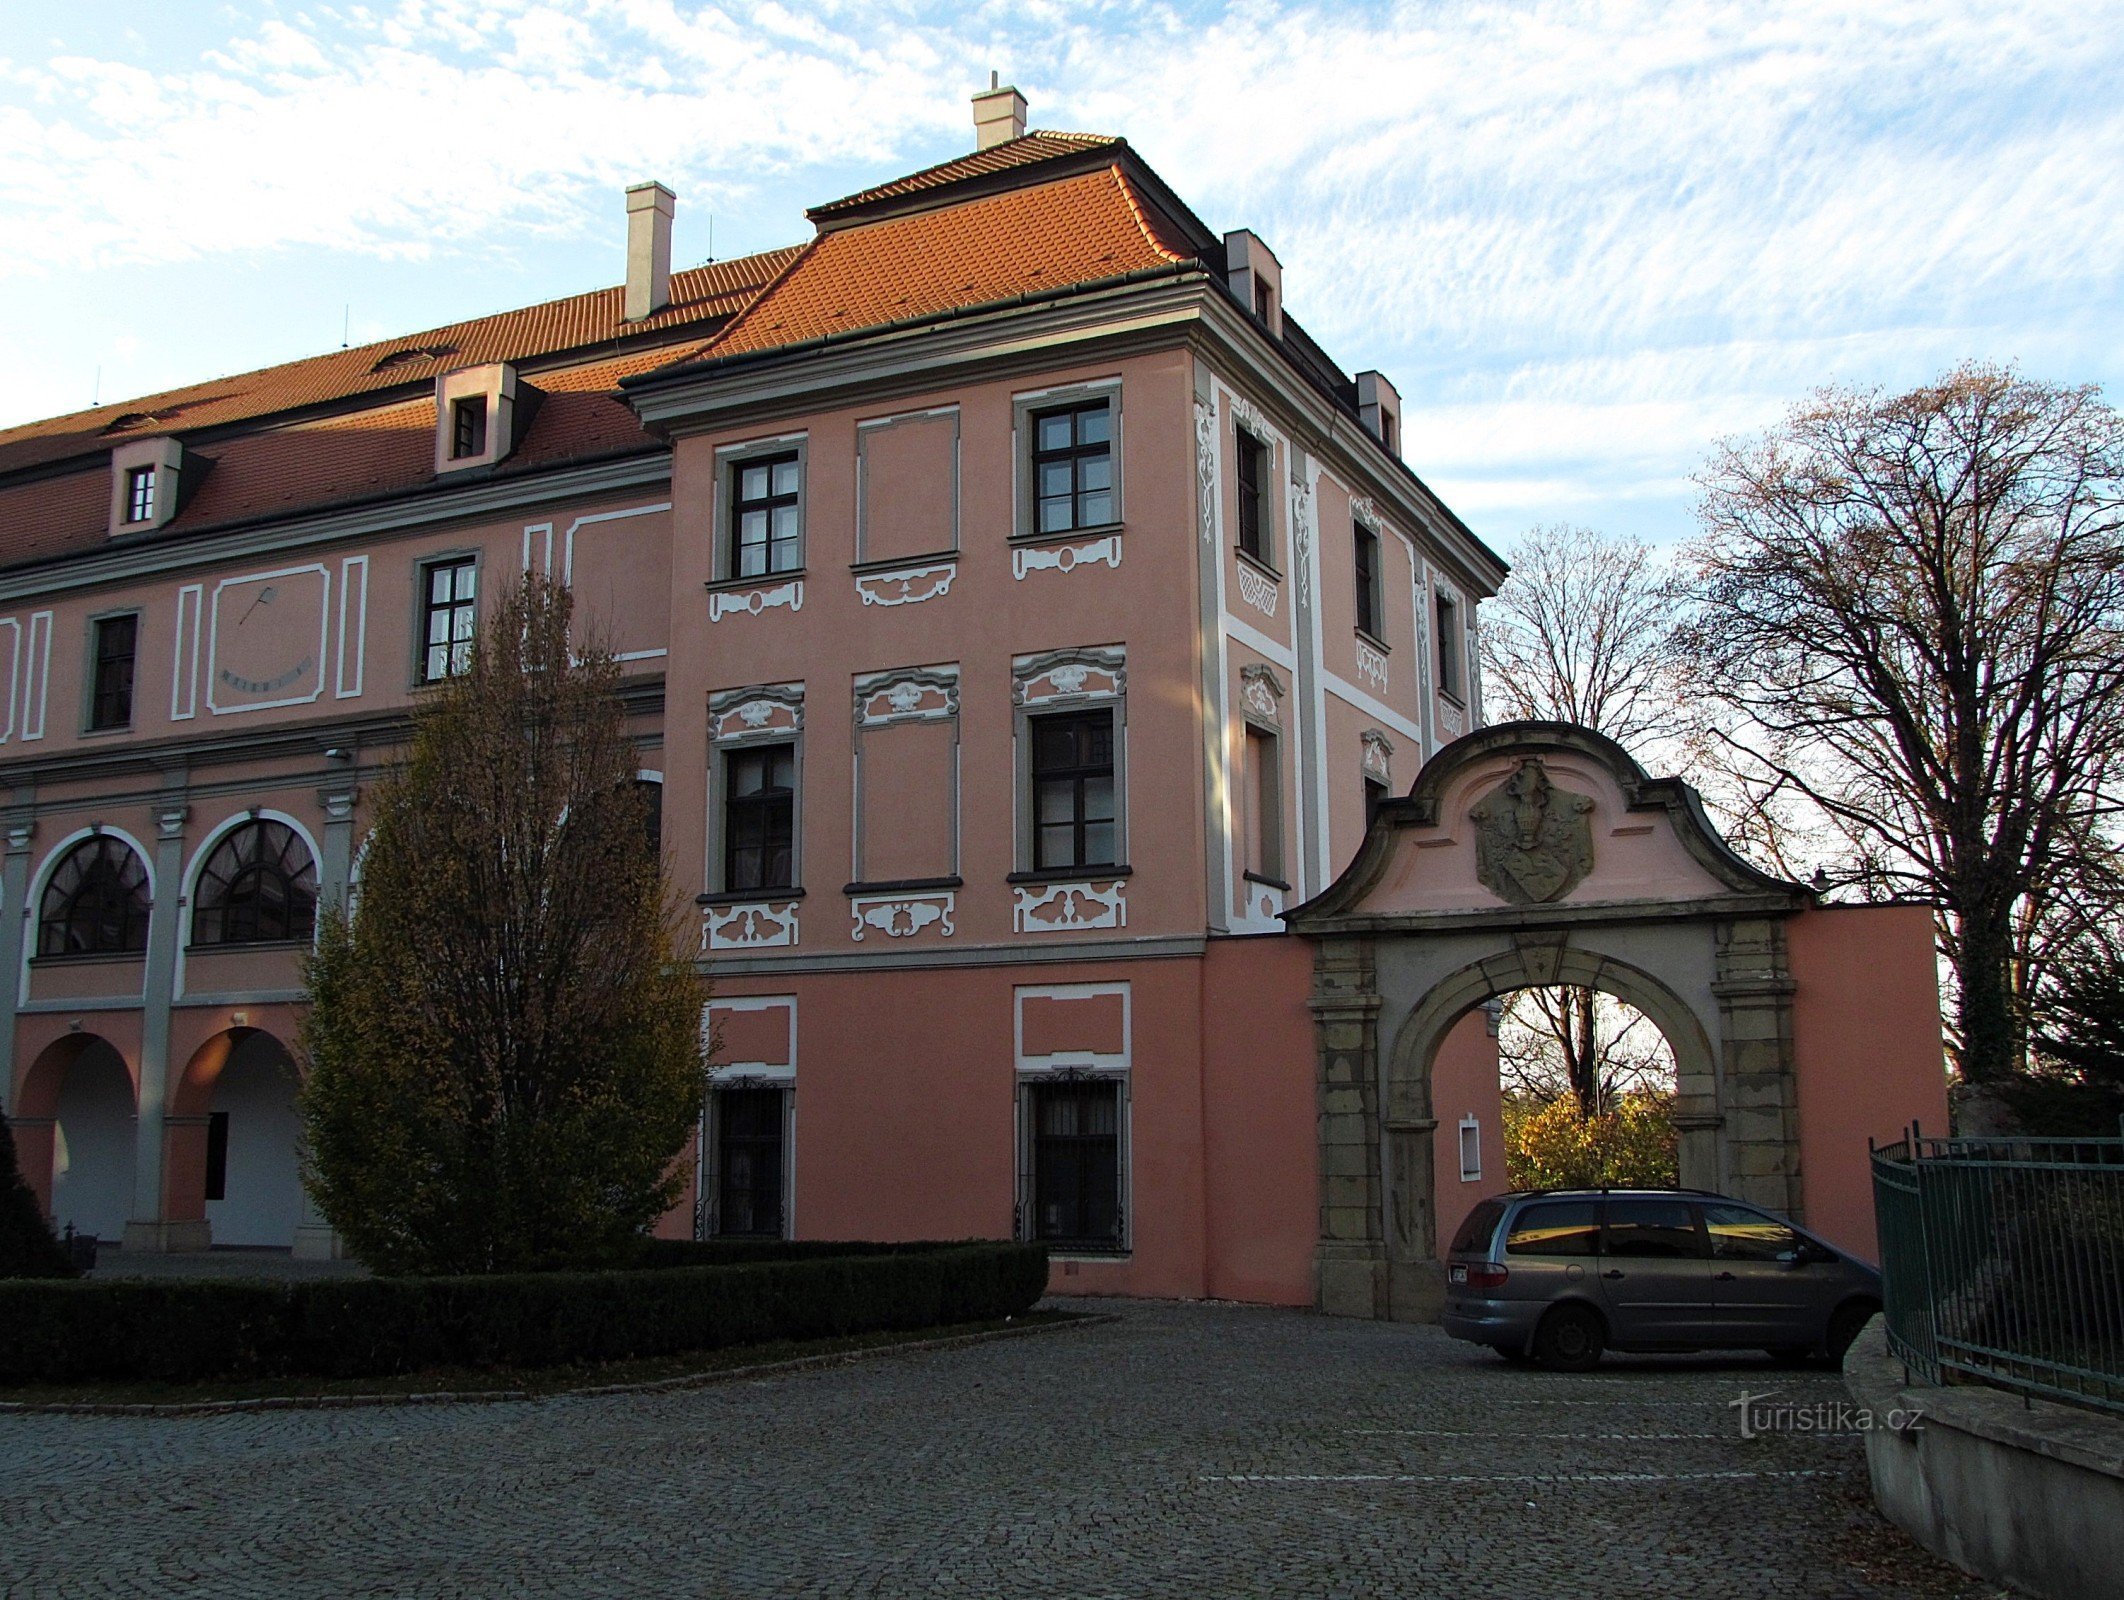 Valašské Meziříčí - Žerotín-kasteel in het stadscentrum